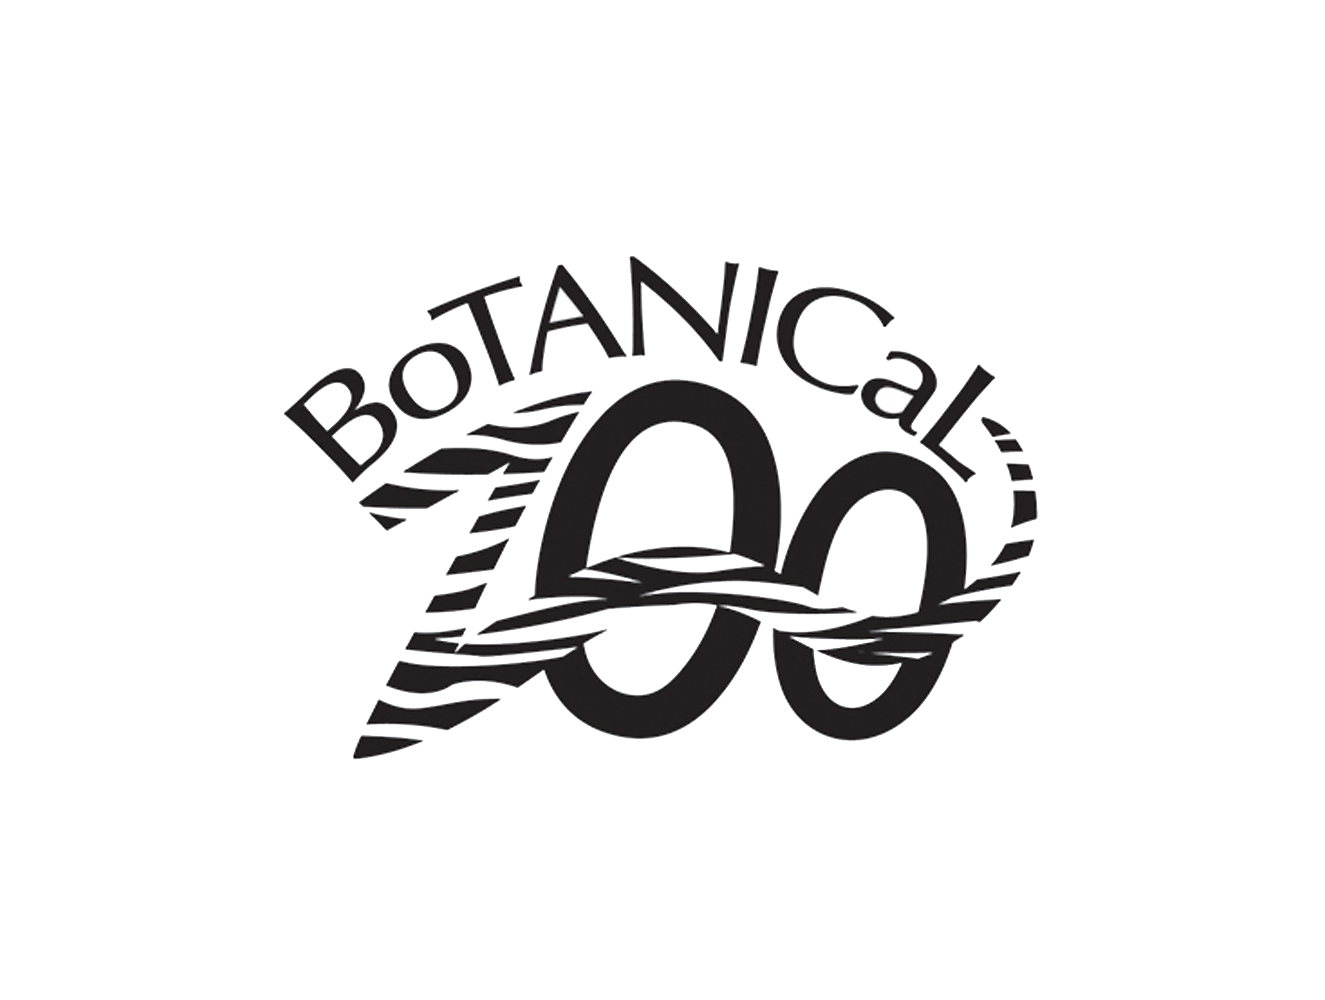 Botanical Zoo logos